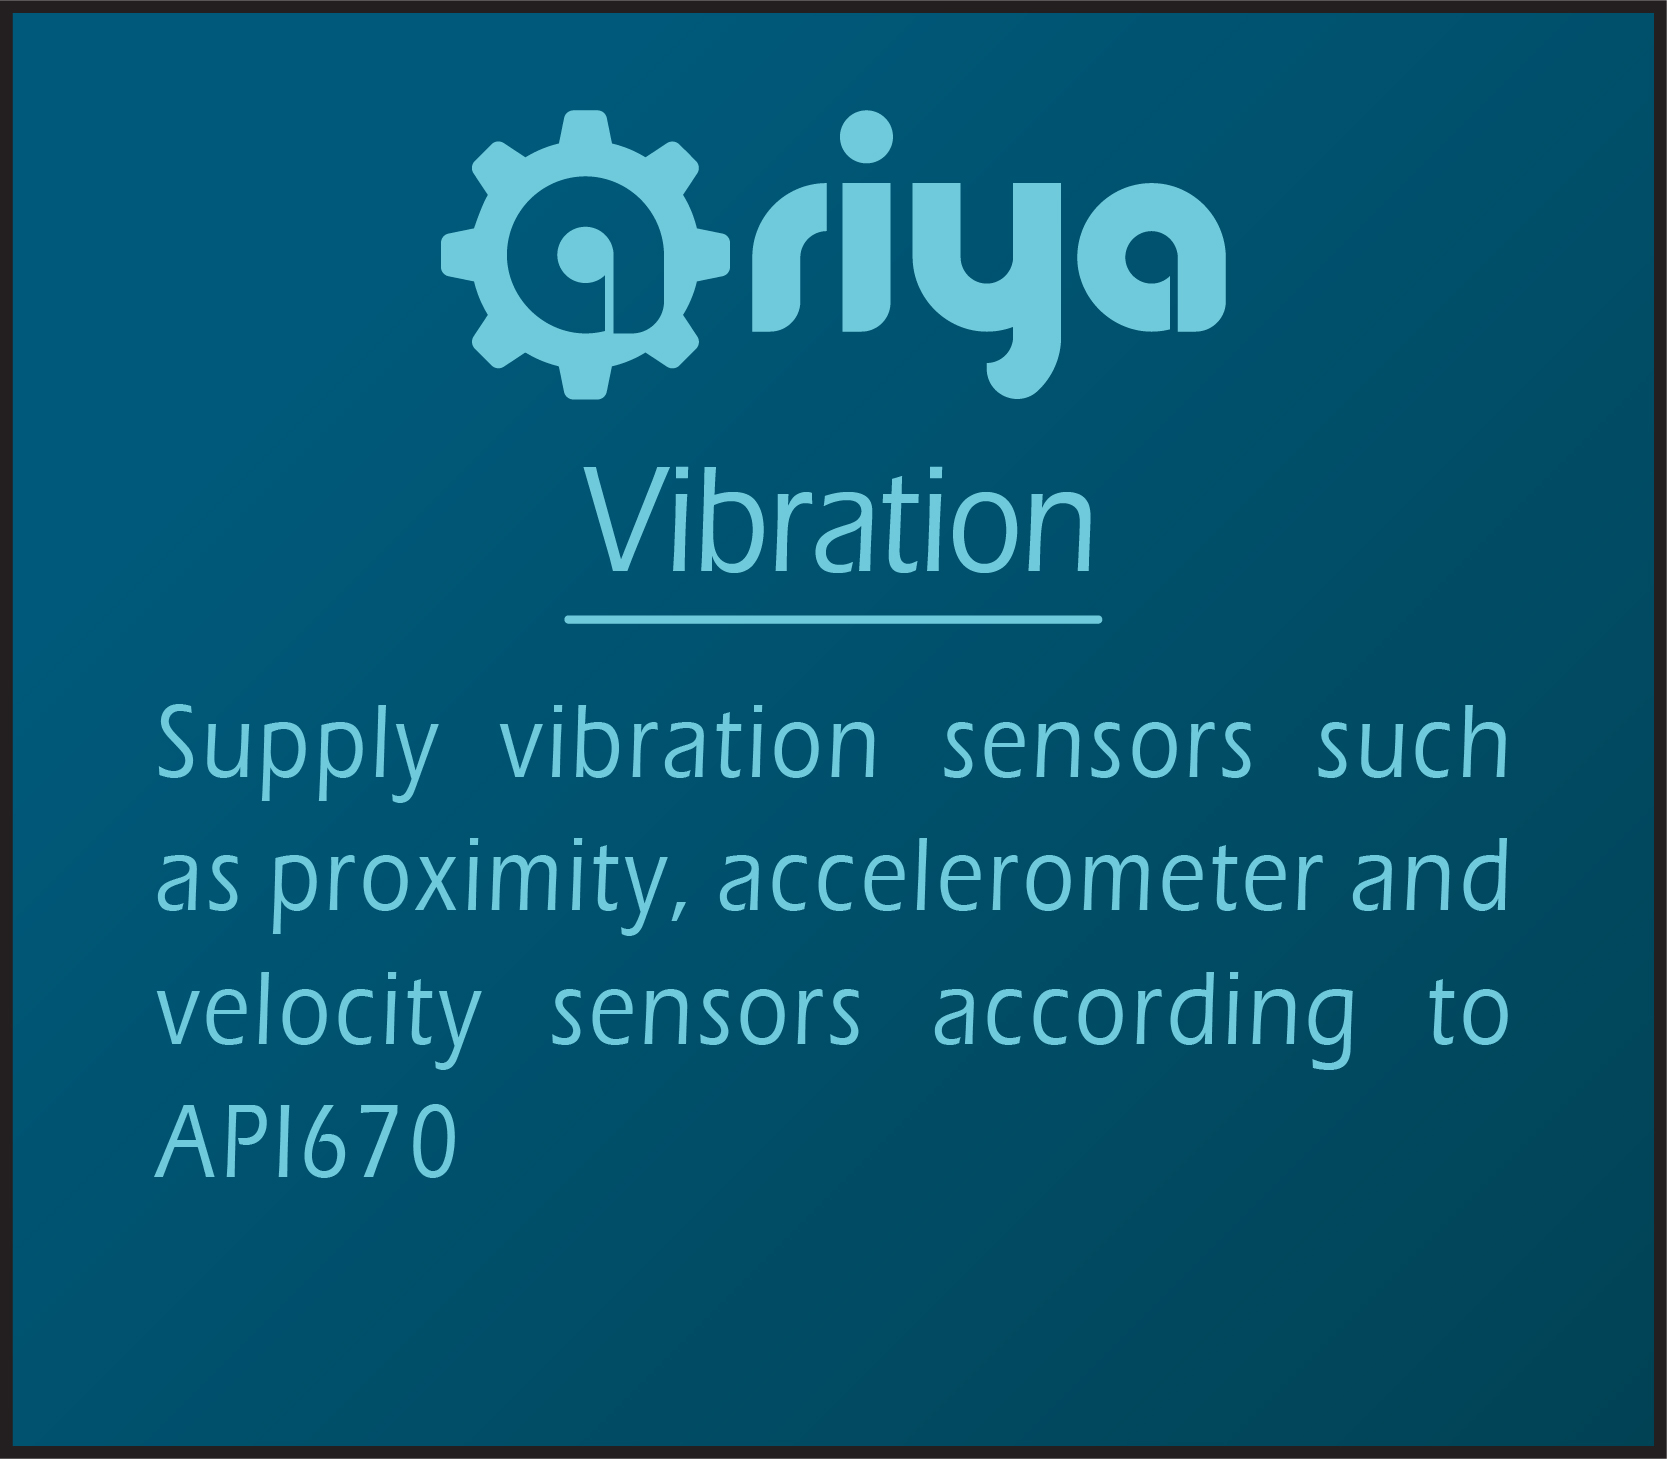 Vibration-Ariya-instrument-base